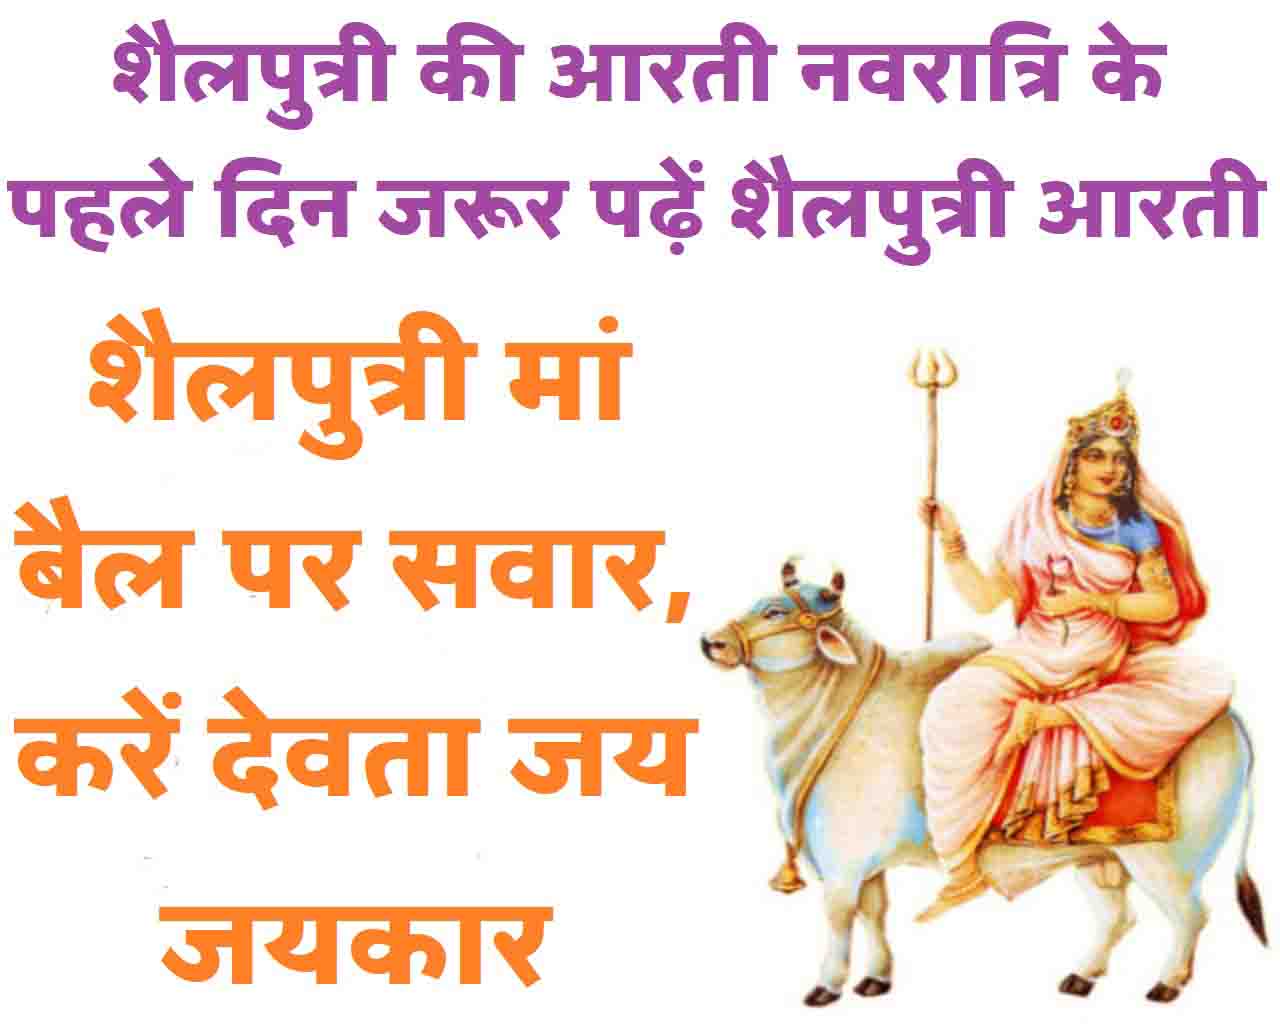 Shailputri Ki Aarti नवरात्रि के पहले दिन जरूर पढ़ें शैलपुत्री आरती शैलपुत्री मां बैल पर सवार, करें देवता जय जयकार